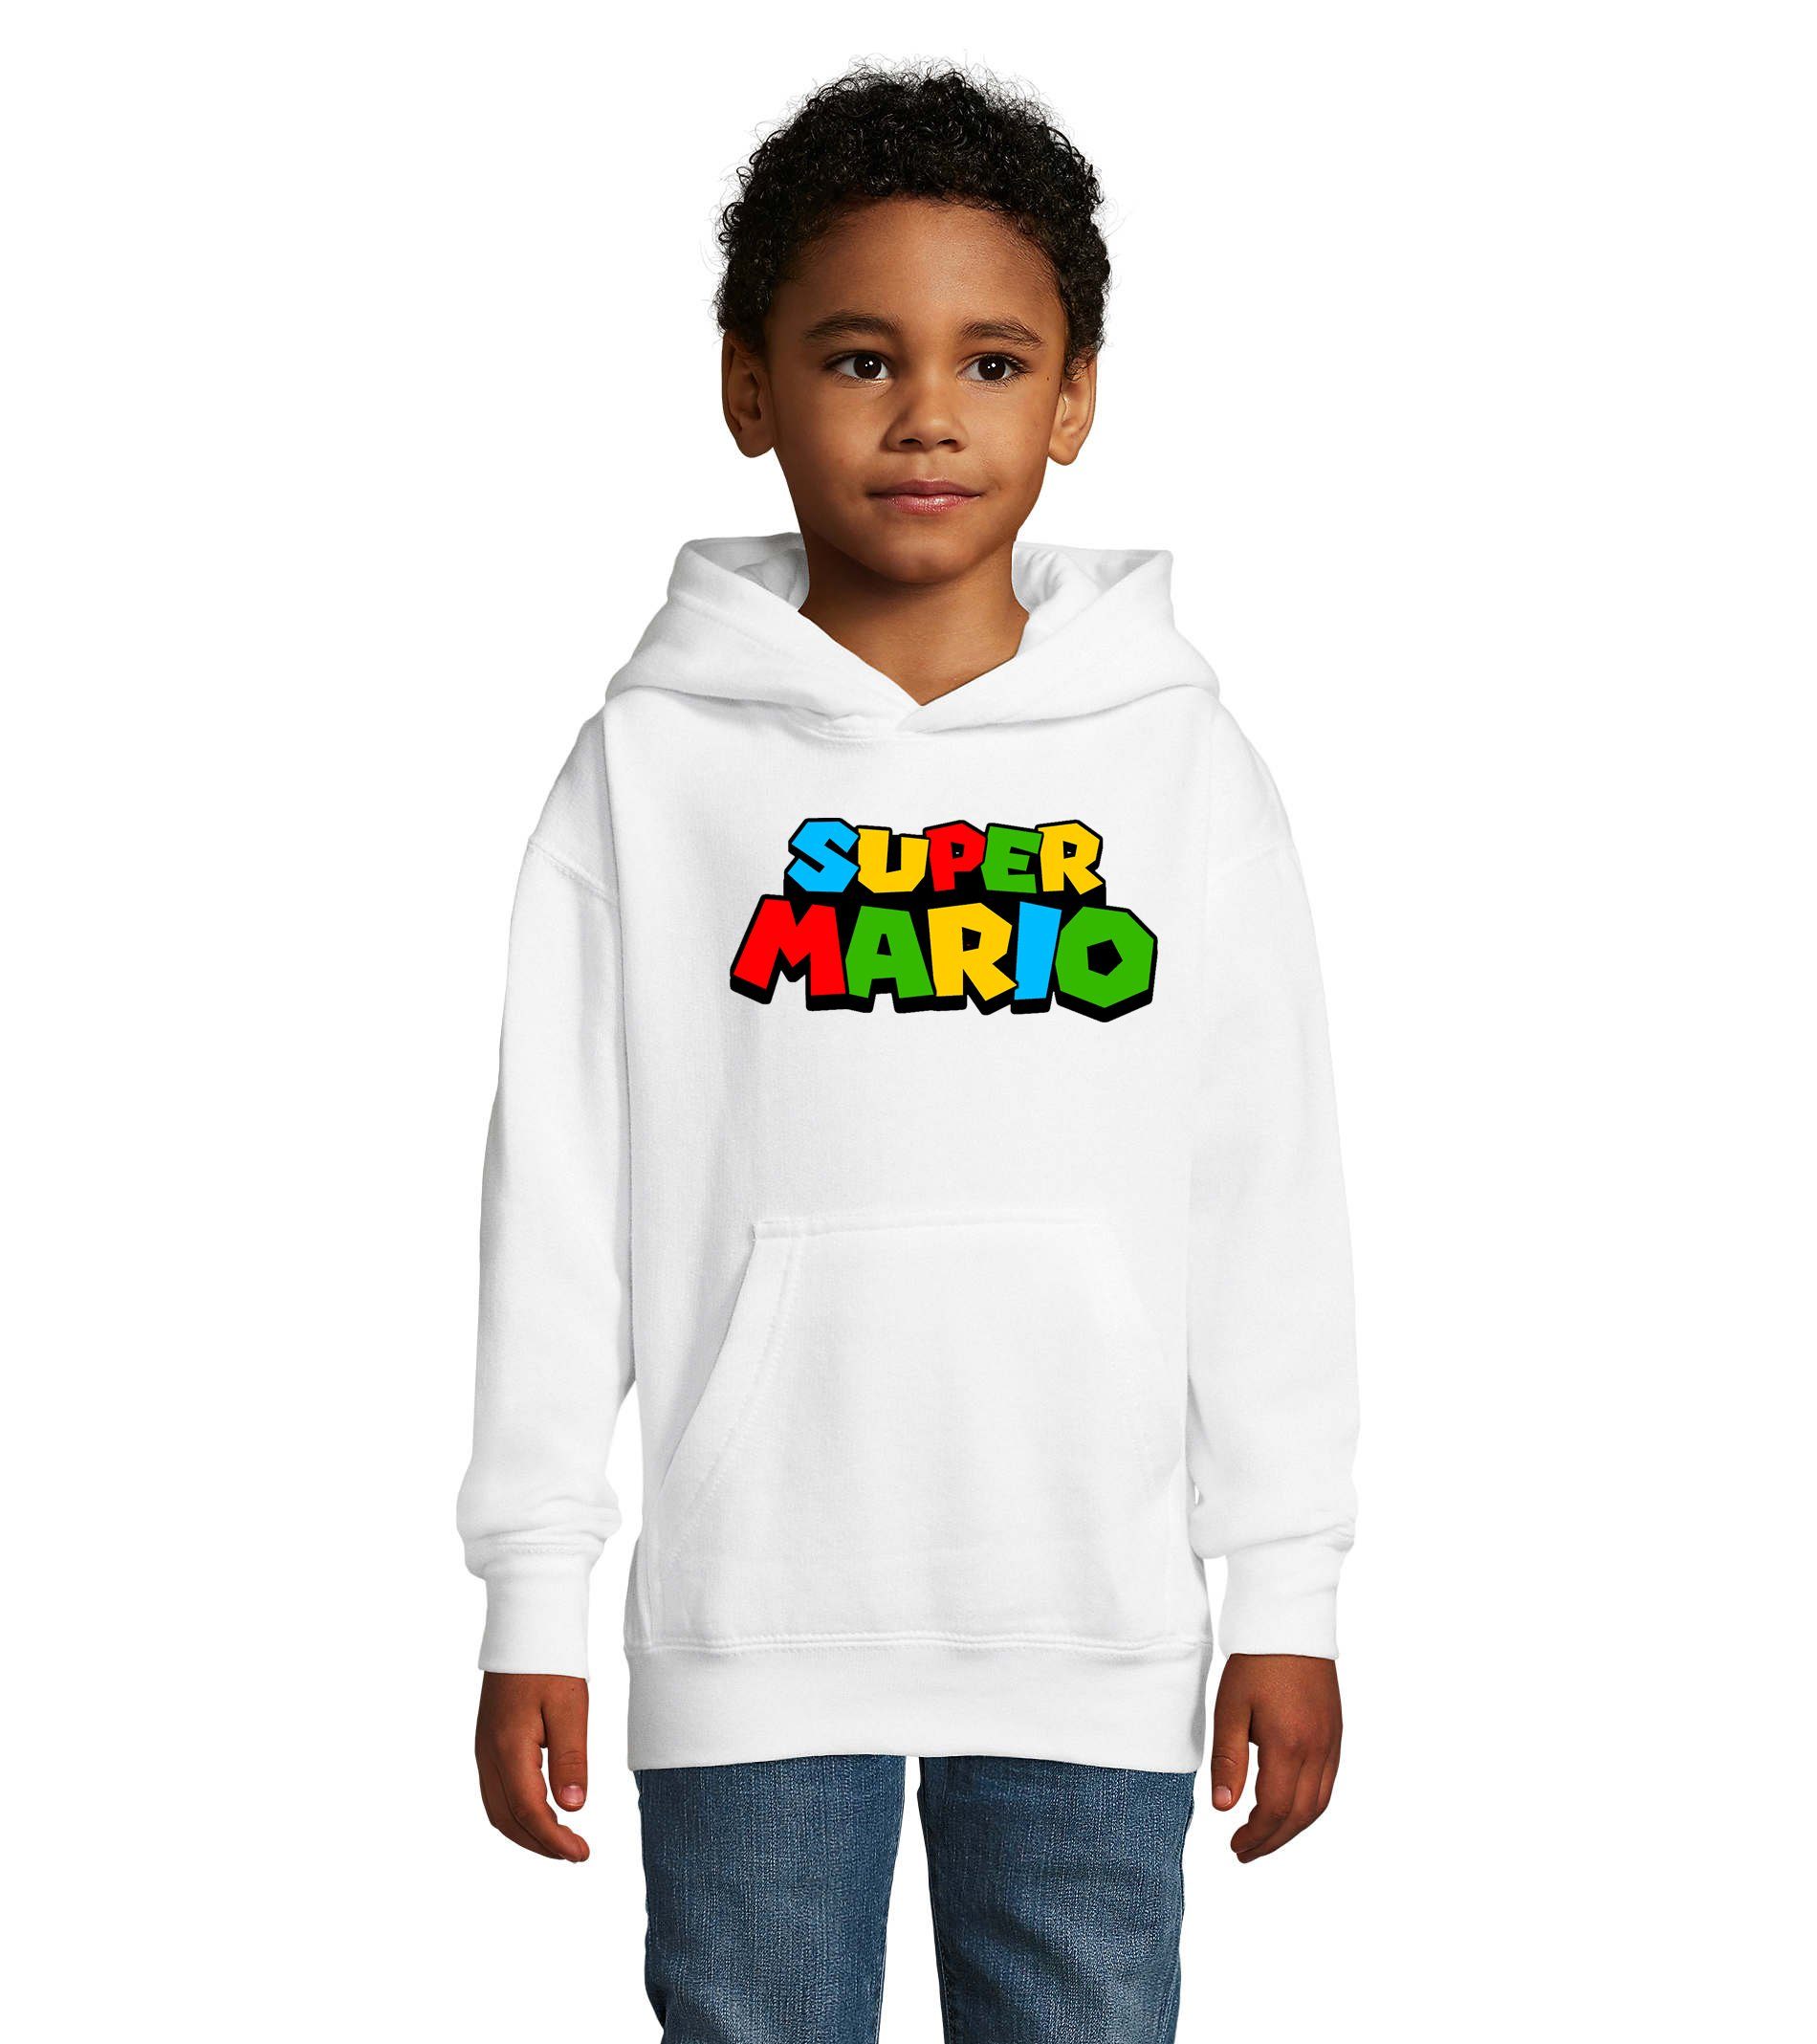 Blondie & Brownie Hoodie Kinder Super Mario Nintendo Gamer Gaming Konsole Spiele mit Kapuze Weiss